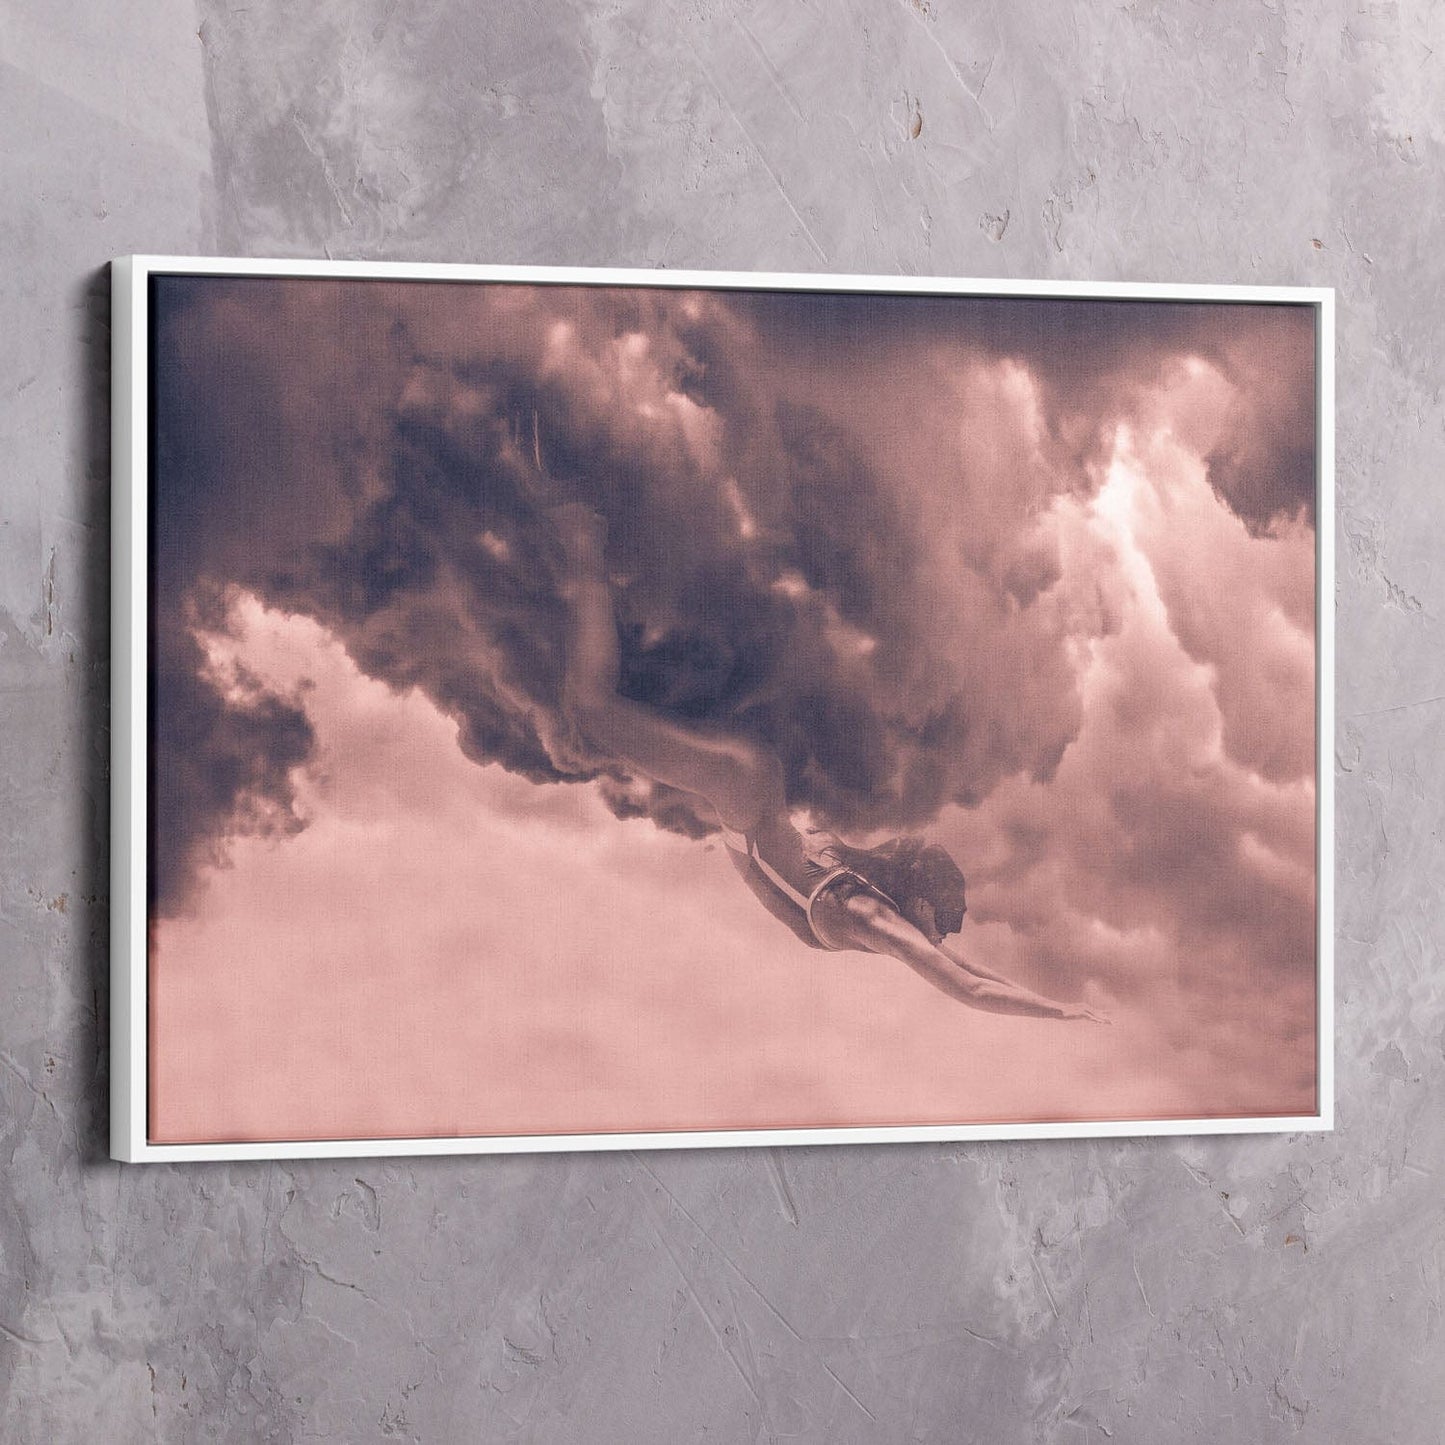 Cloud Diver Wall Art | Inspirational Wall Art Motivational Wall Art Quotes Office Art | ImpaktMaker Exclusive Canvas Art Landscape